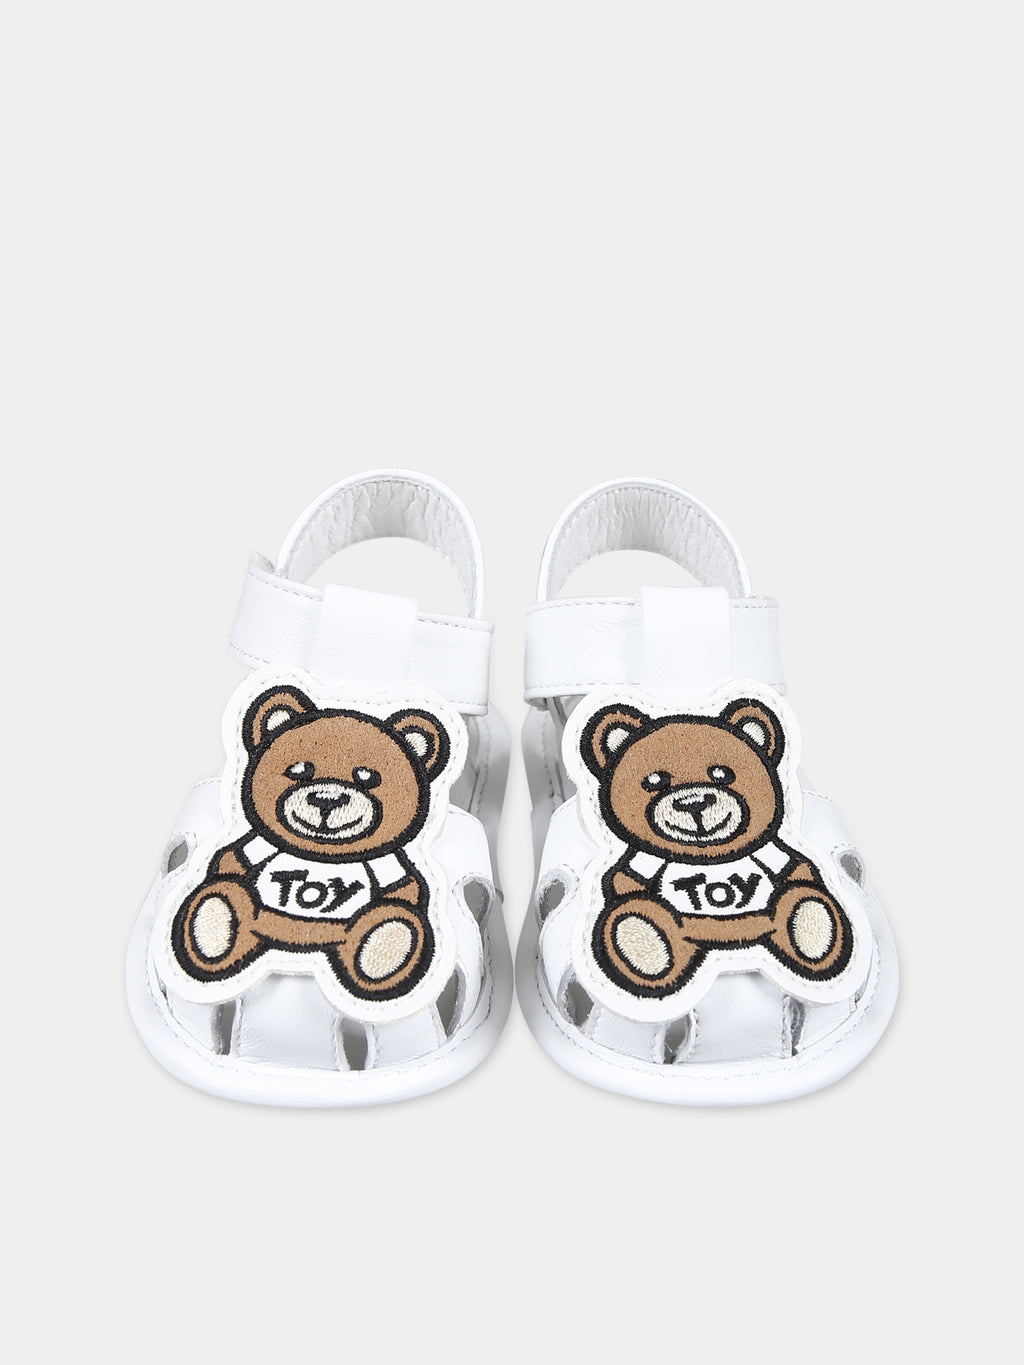 Sandals blanches pour bébé enfants avec Teddy Bear